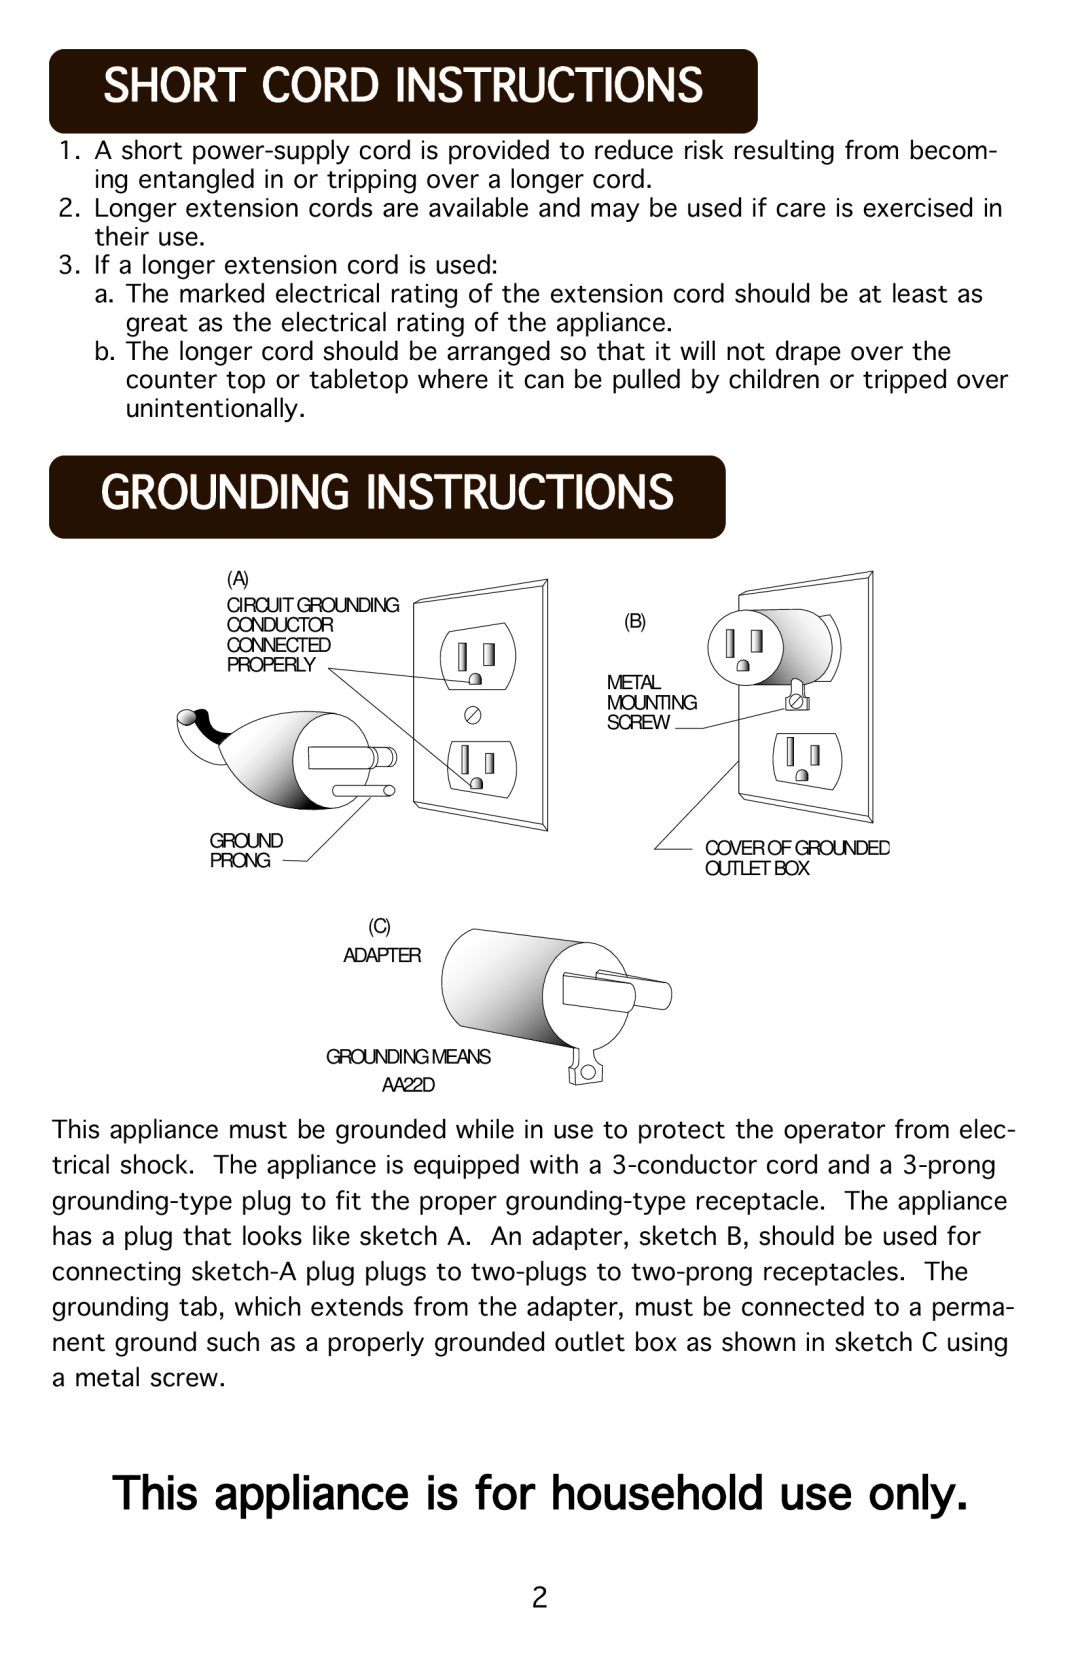 Aroma AWT-1202 instruction manual Shortucorduinstructions, Groundinguinstructions, ThisUapplianceUisUforUhouseholdUuseUonly 